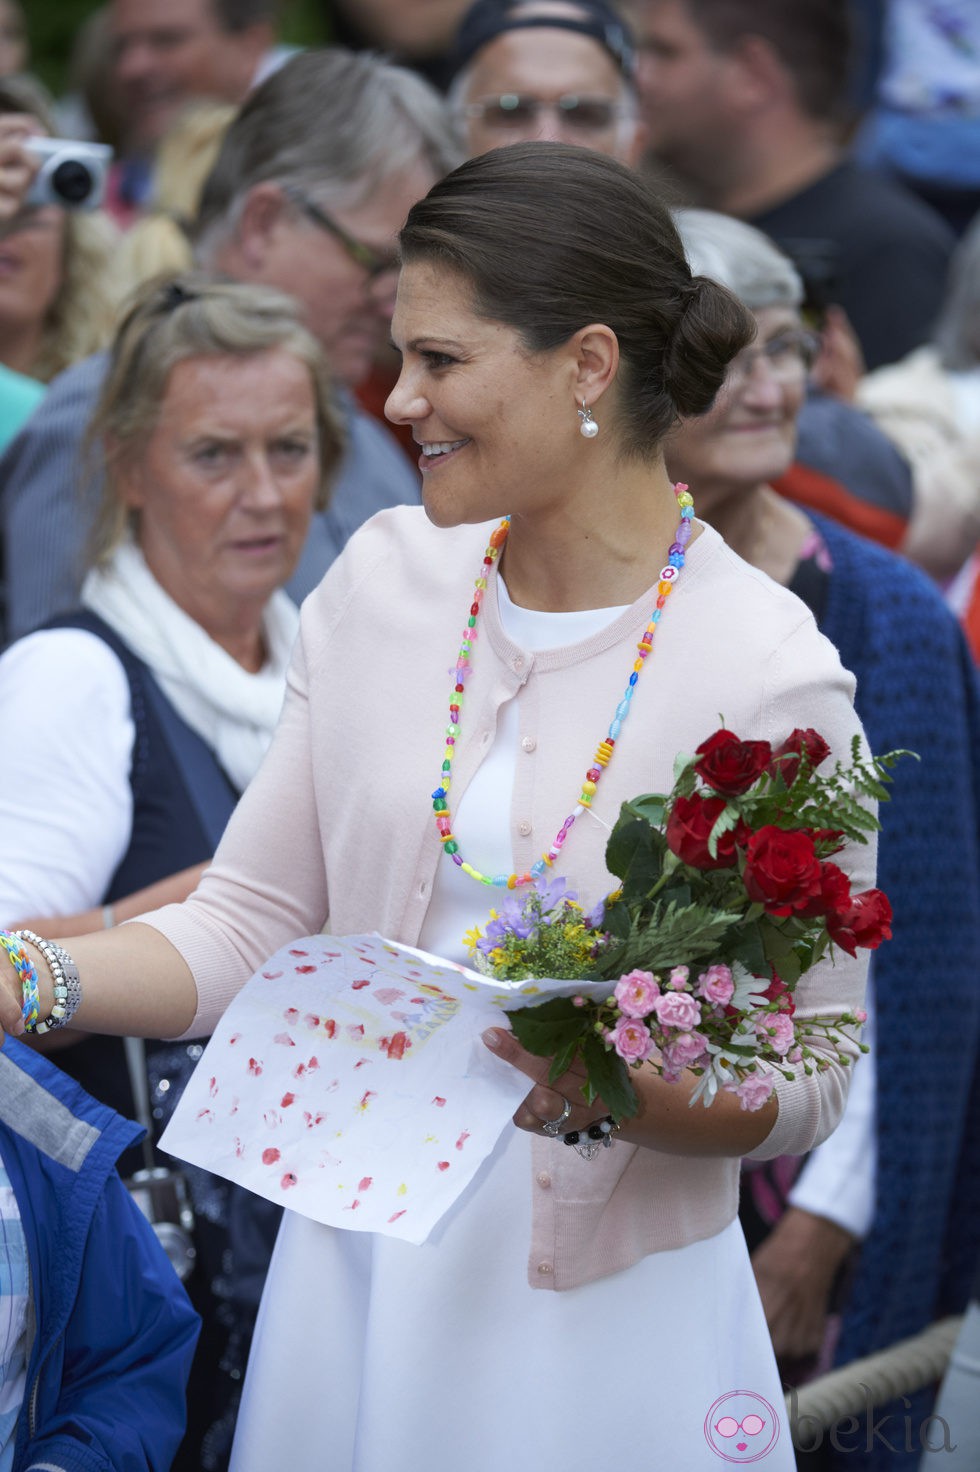 Victoria de Suecia recibe regalos el día de su 37 cumpleaños